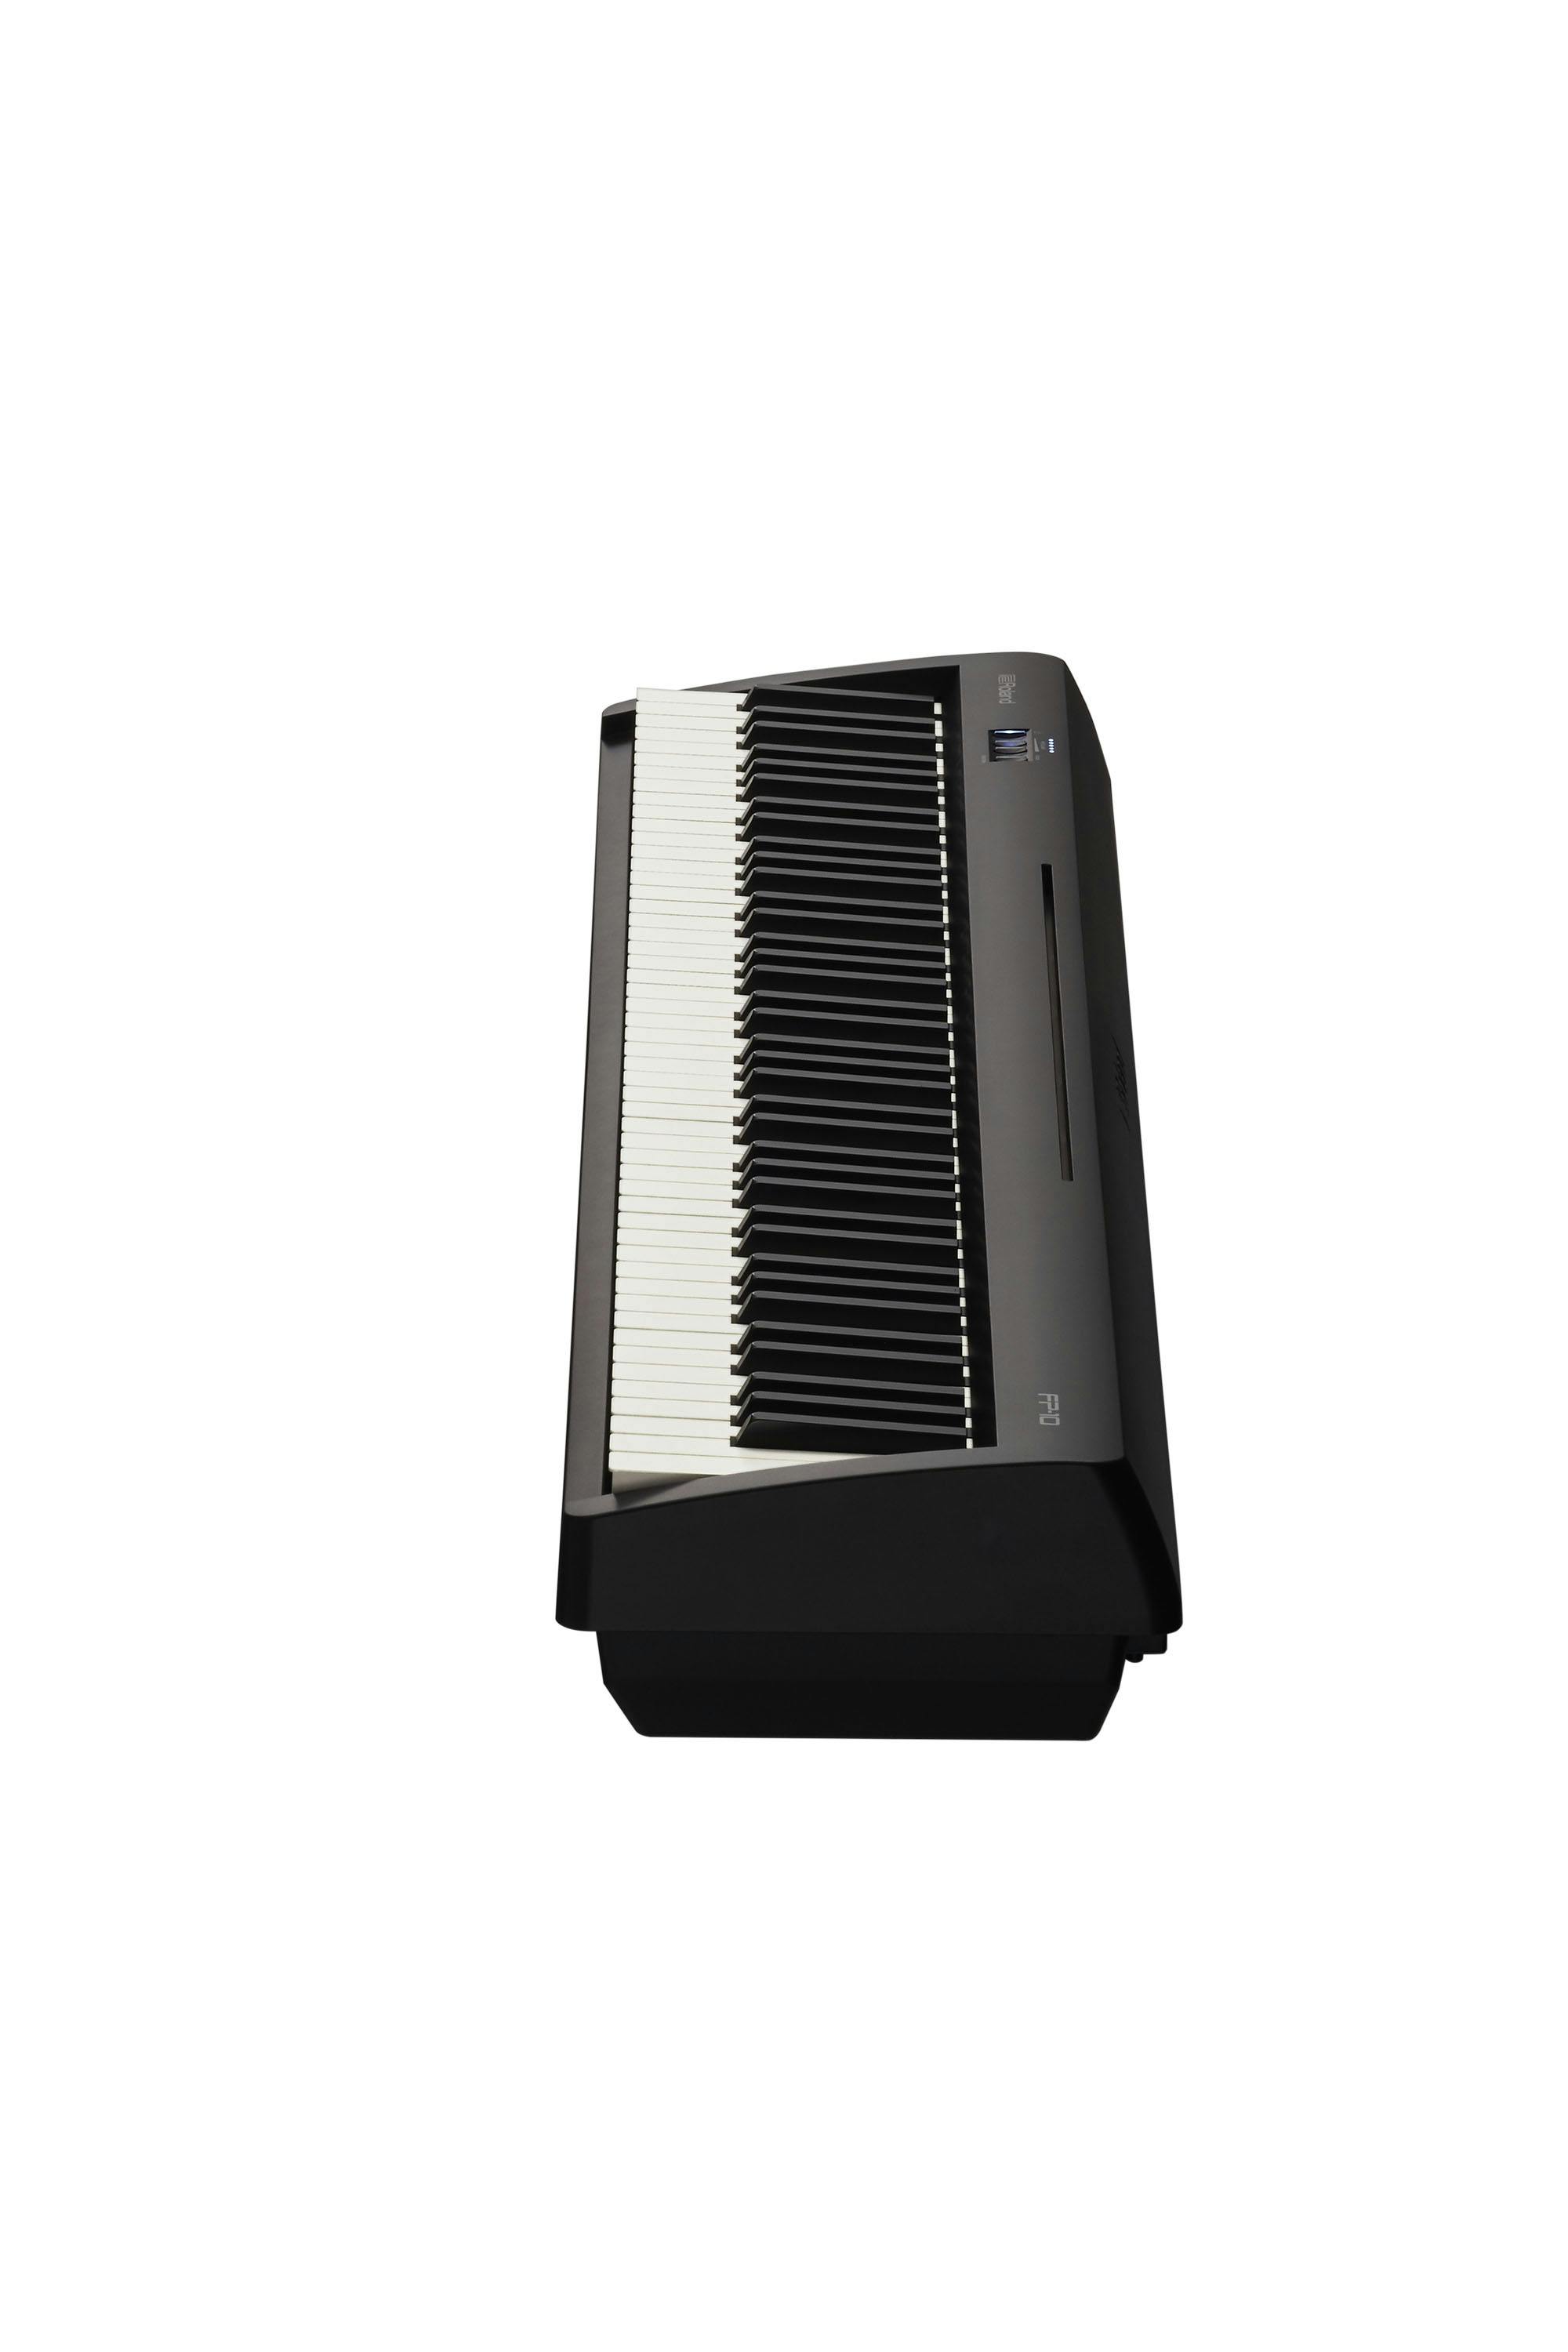 Roland FP-10 [EU] 88-Note Digital Piano (Black)